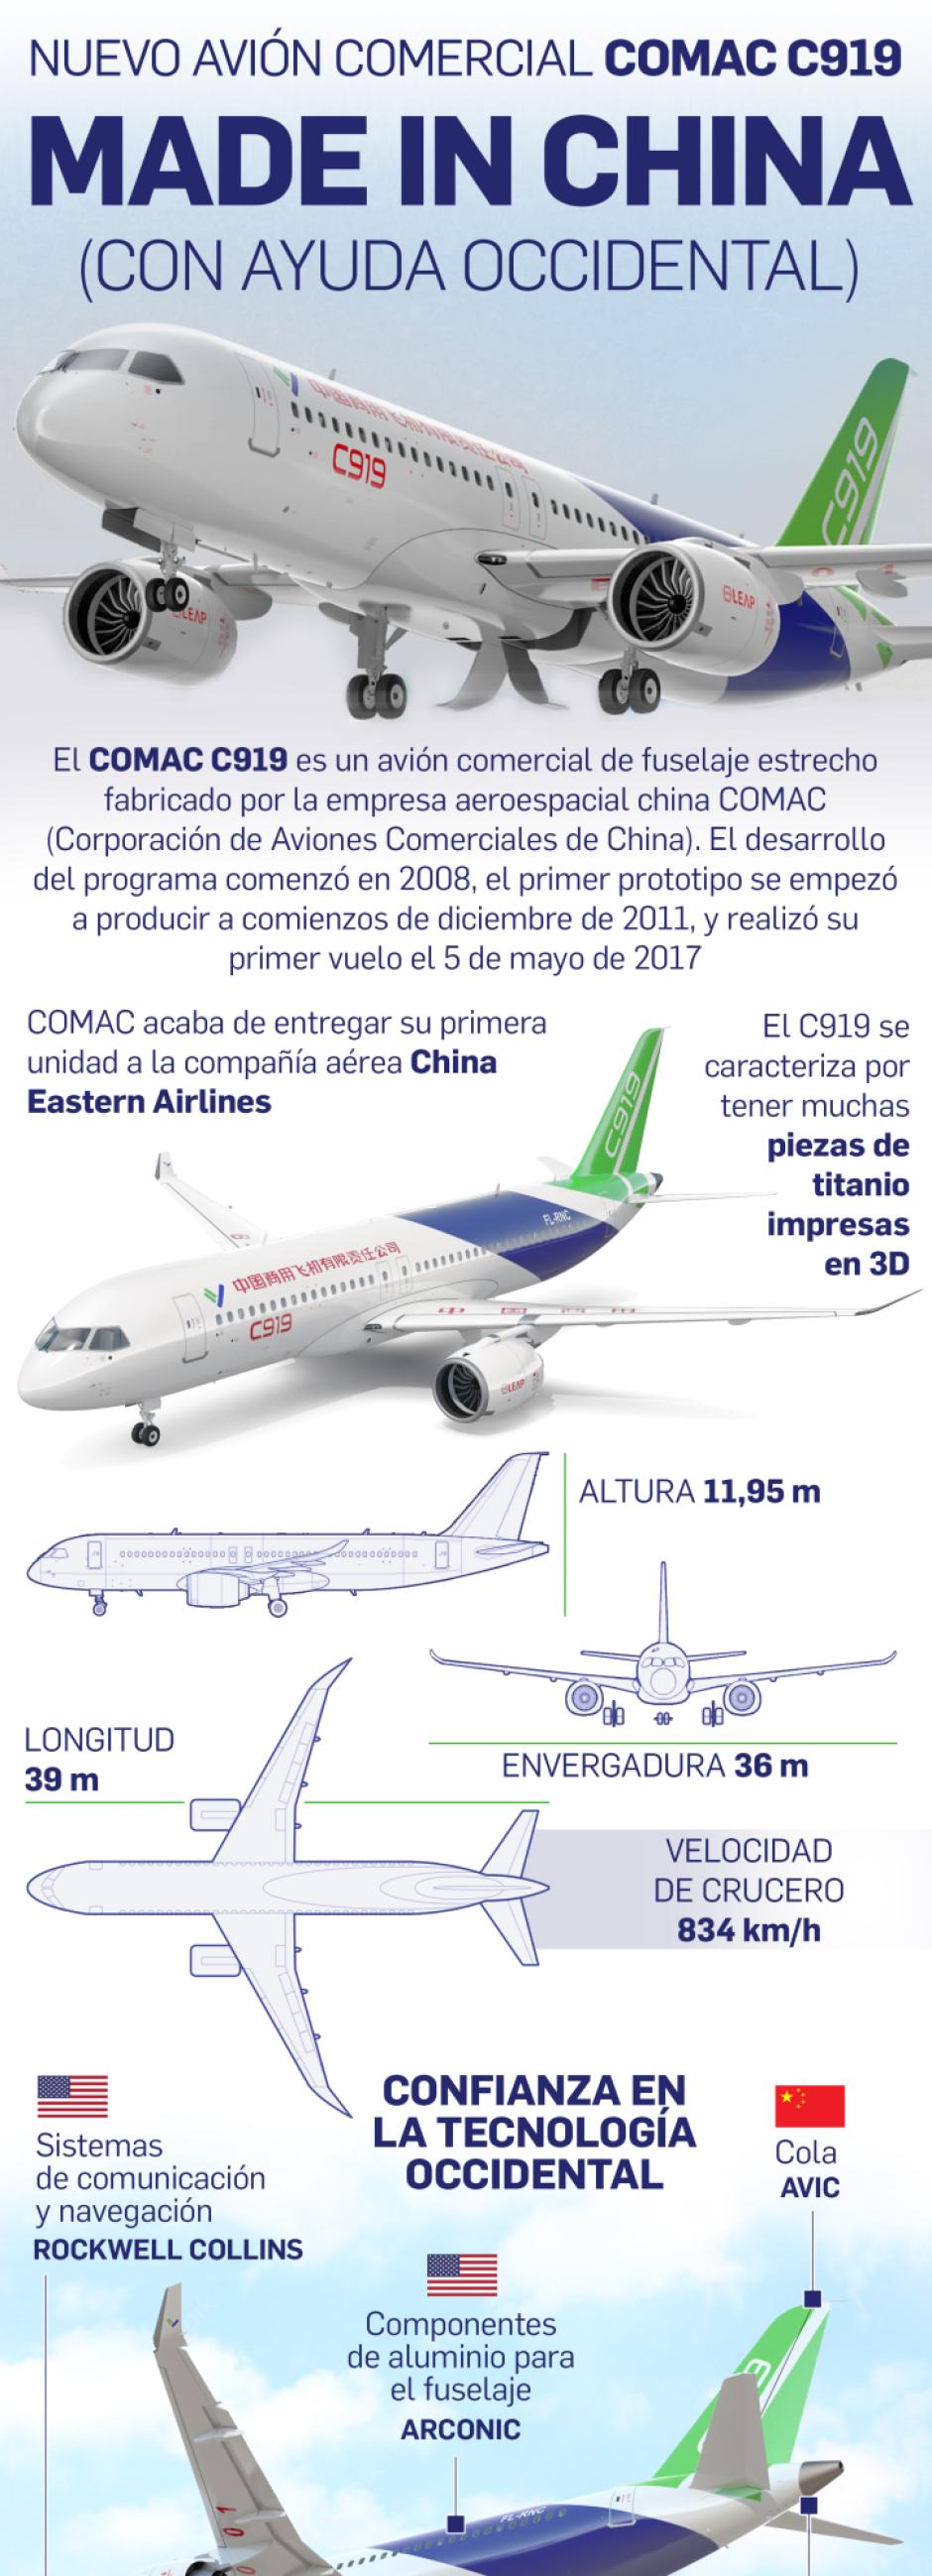 El C-919 que competirá con Boeing y Airbus